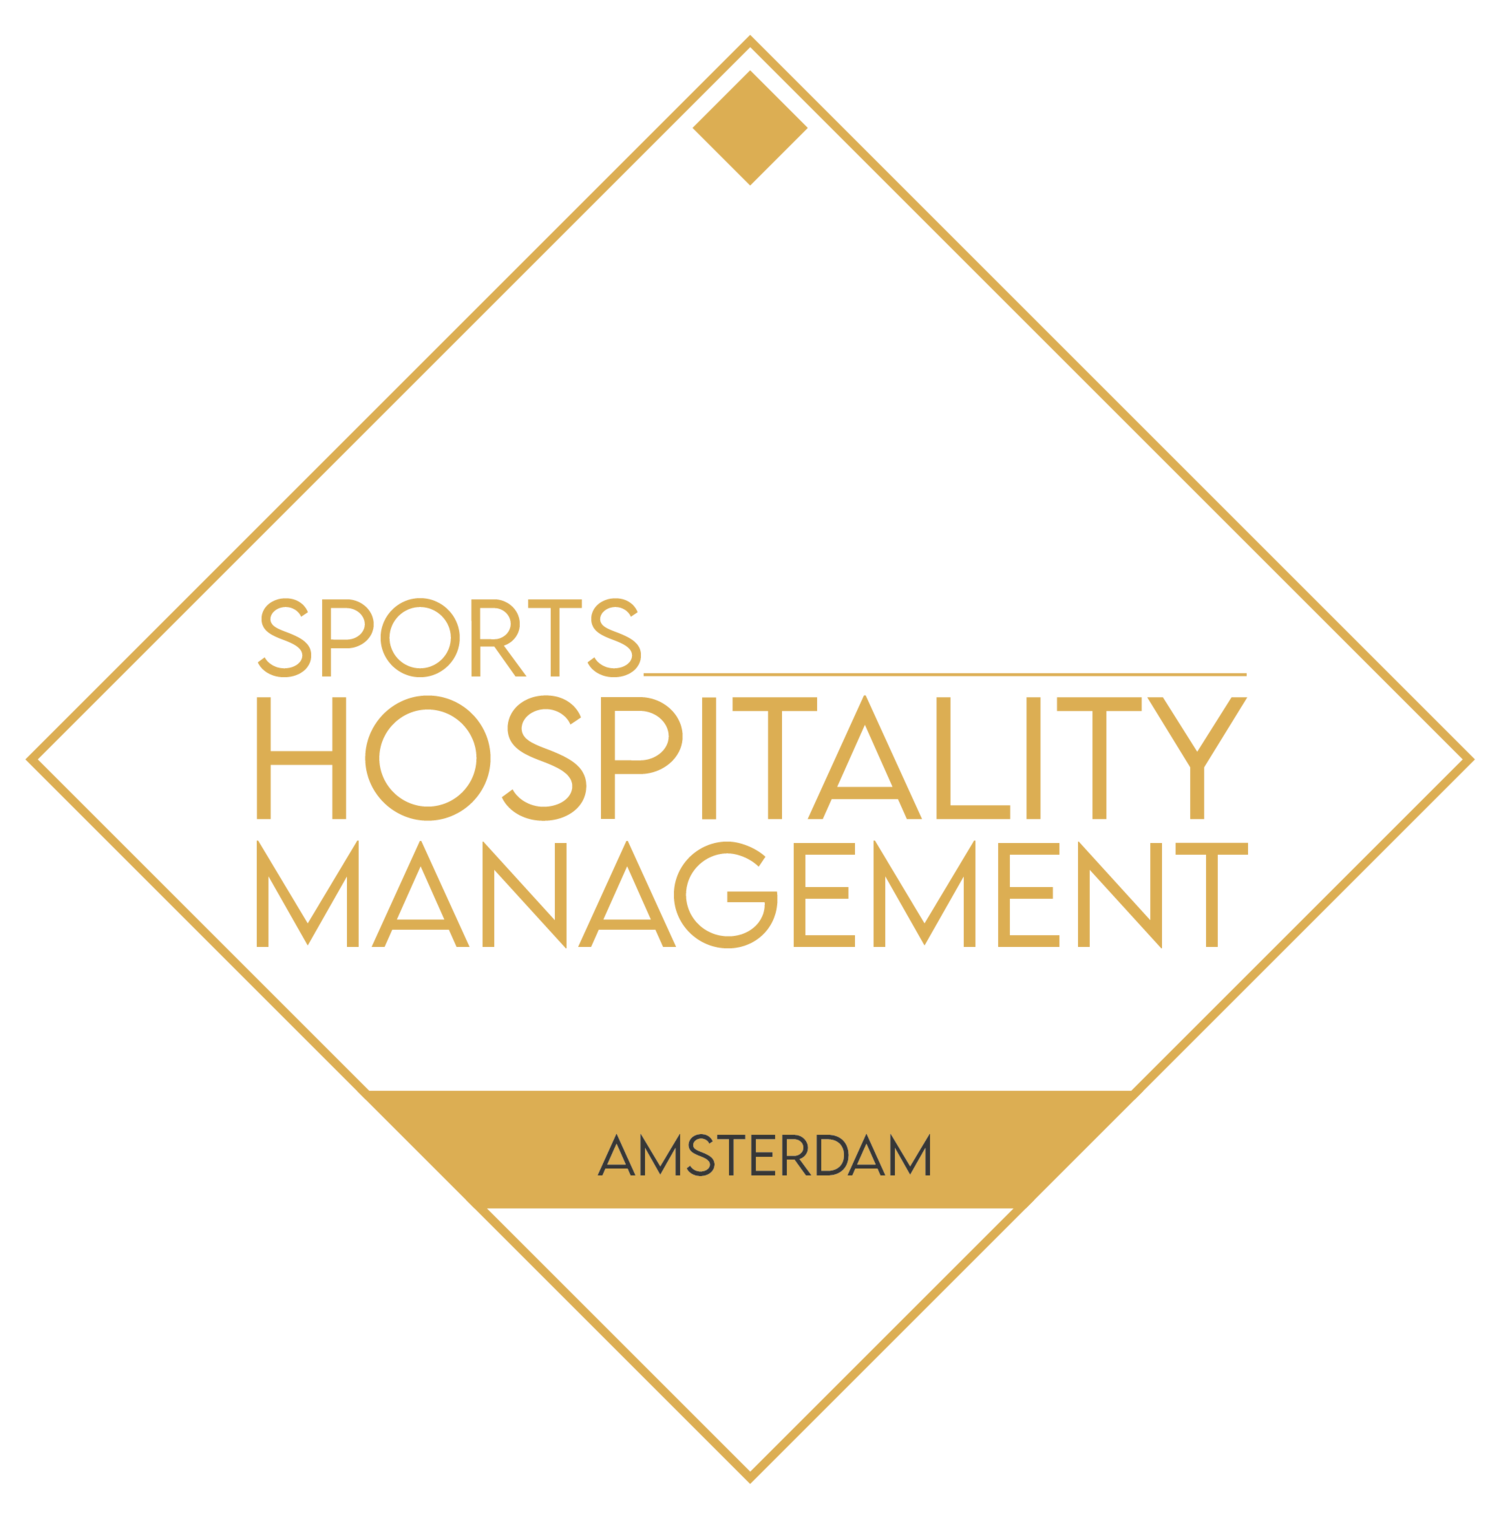 Sports Hospitality Management